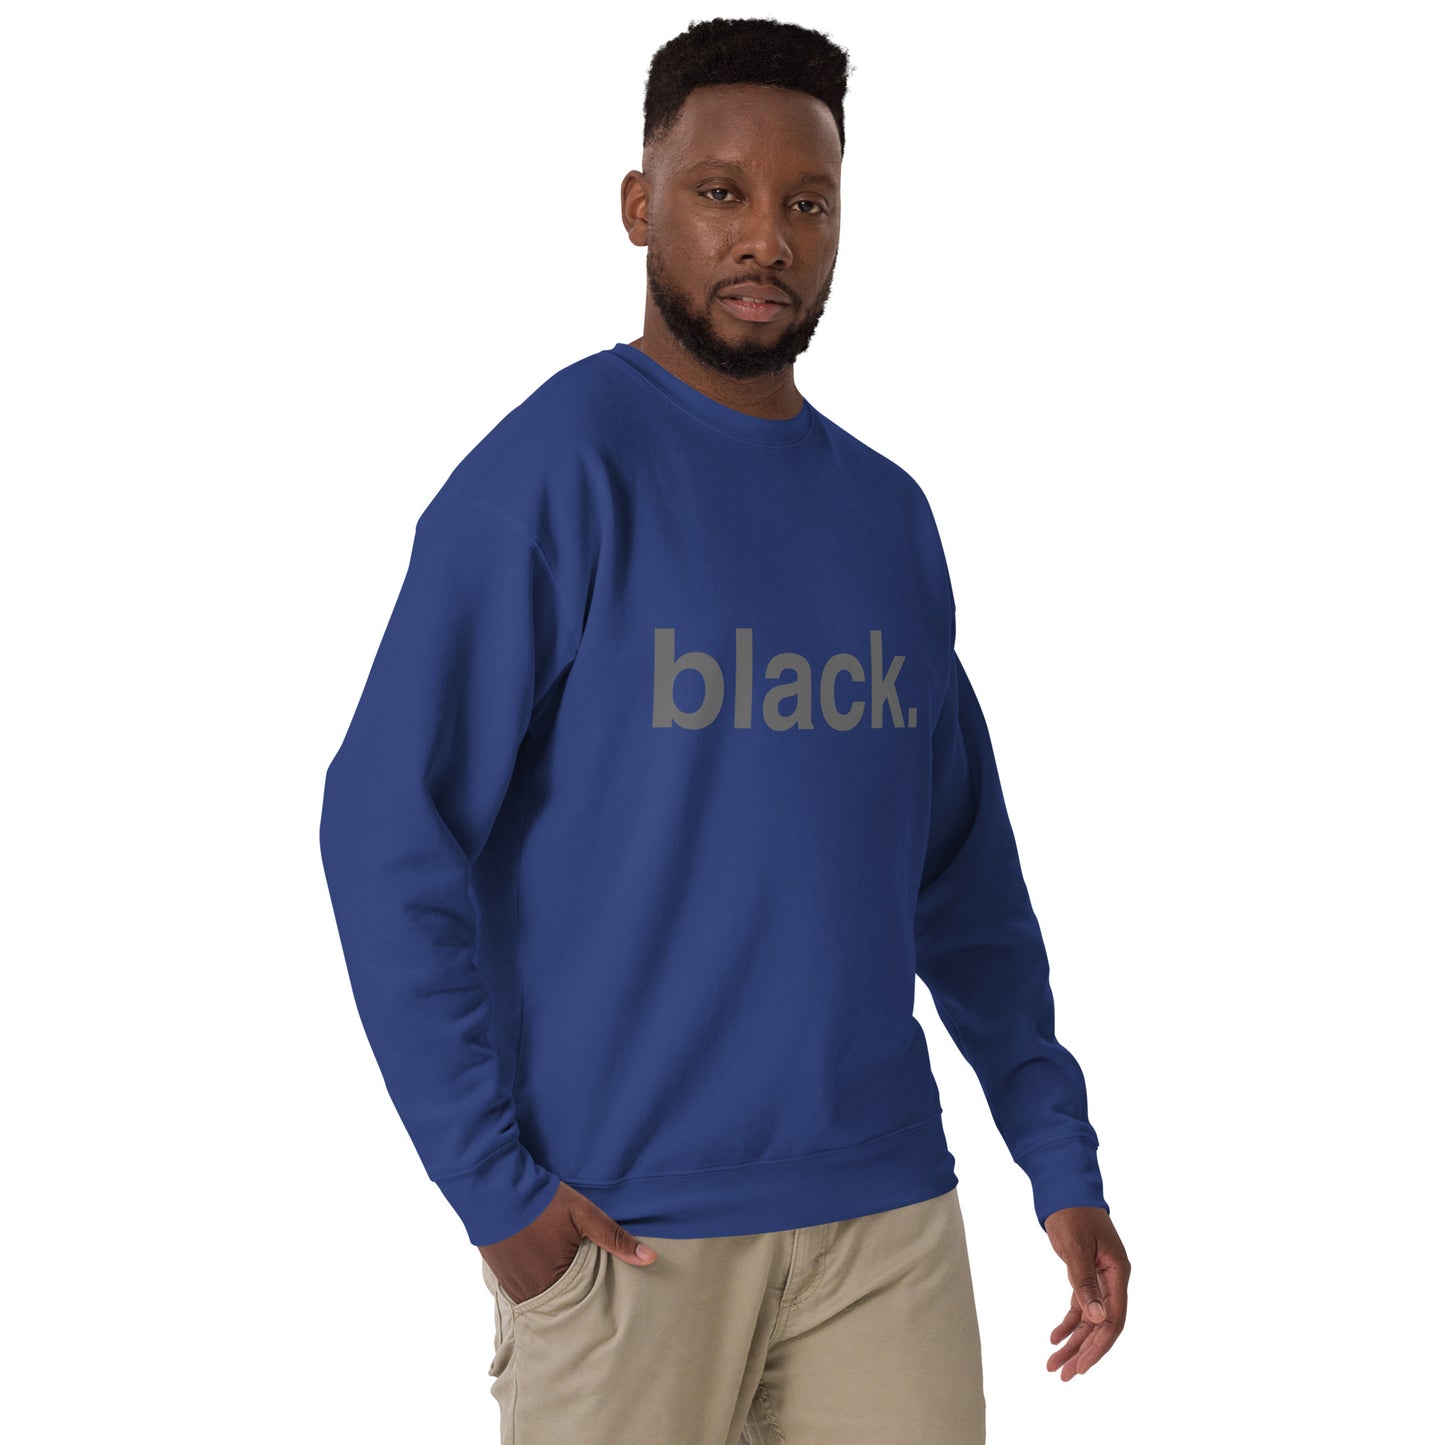 black... Unisex Premium Sweatshirt